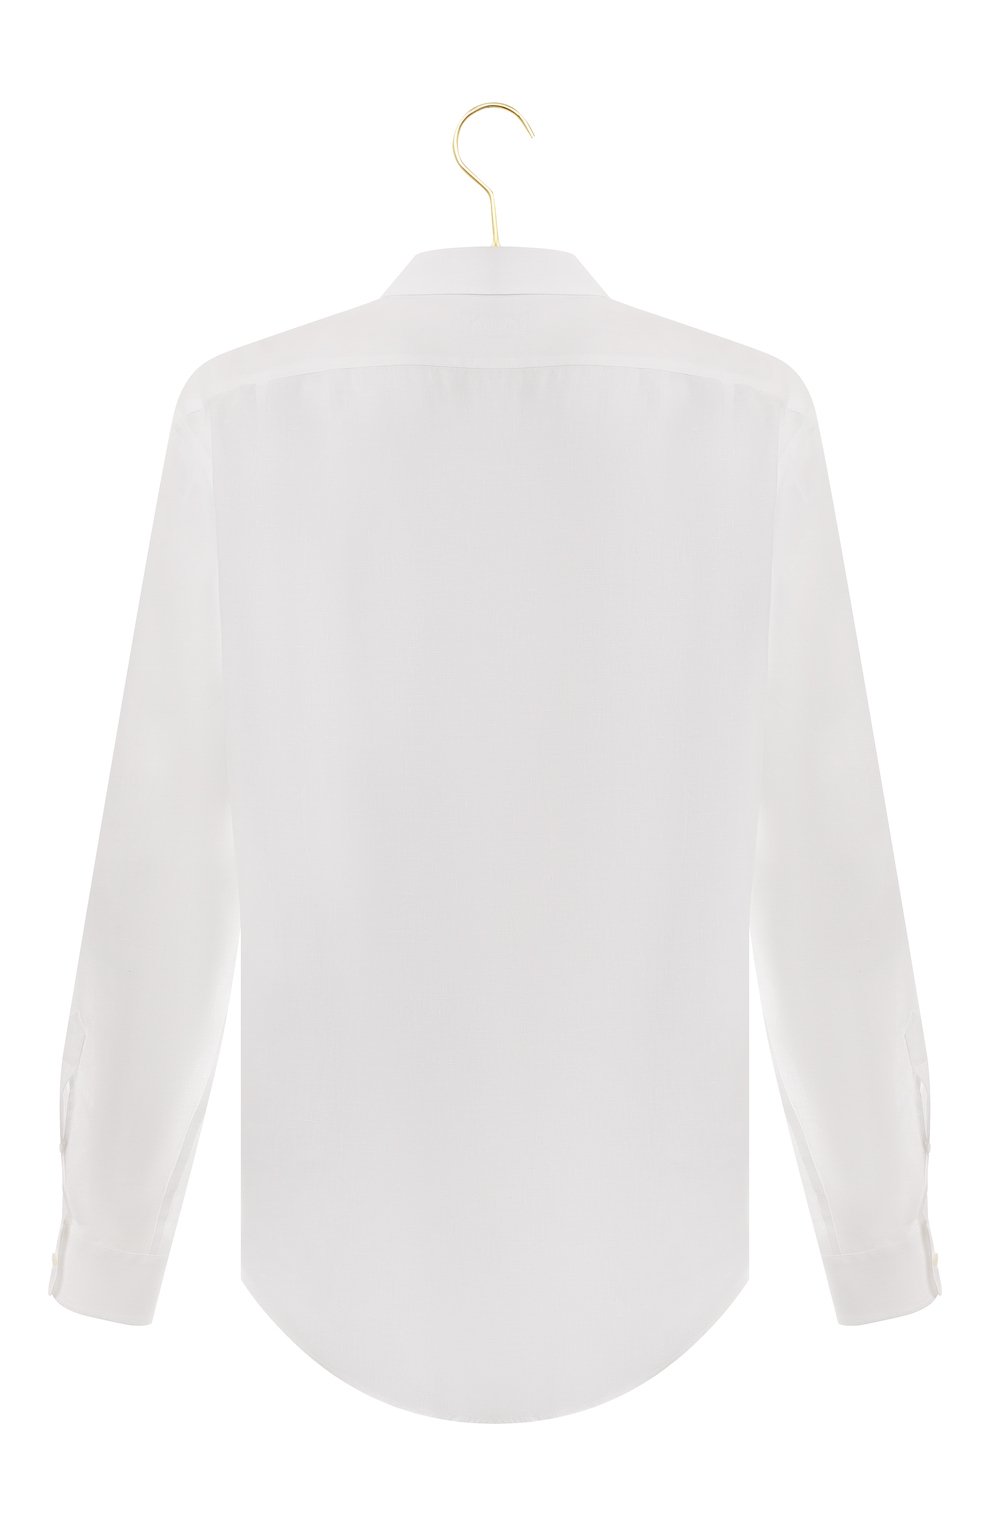 Льняная сорочка | Ralph Lauren | Белый - 2